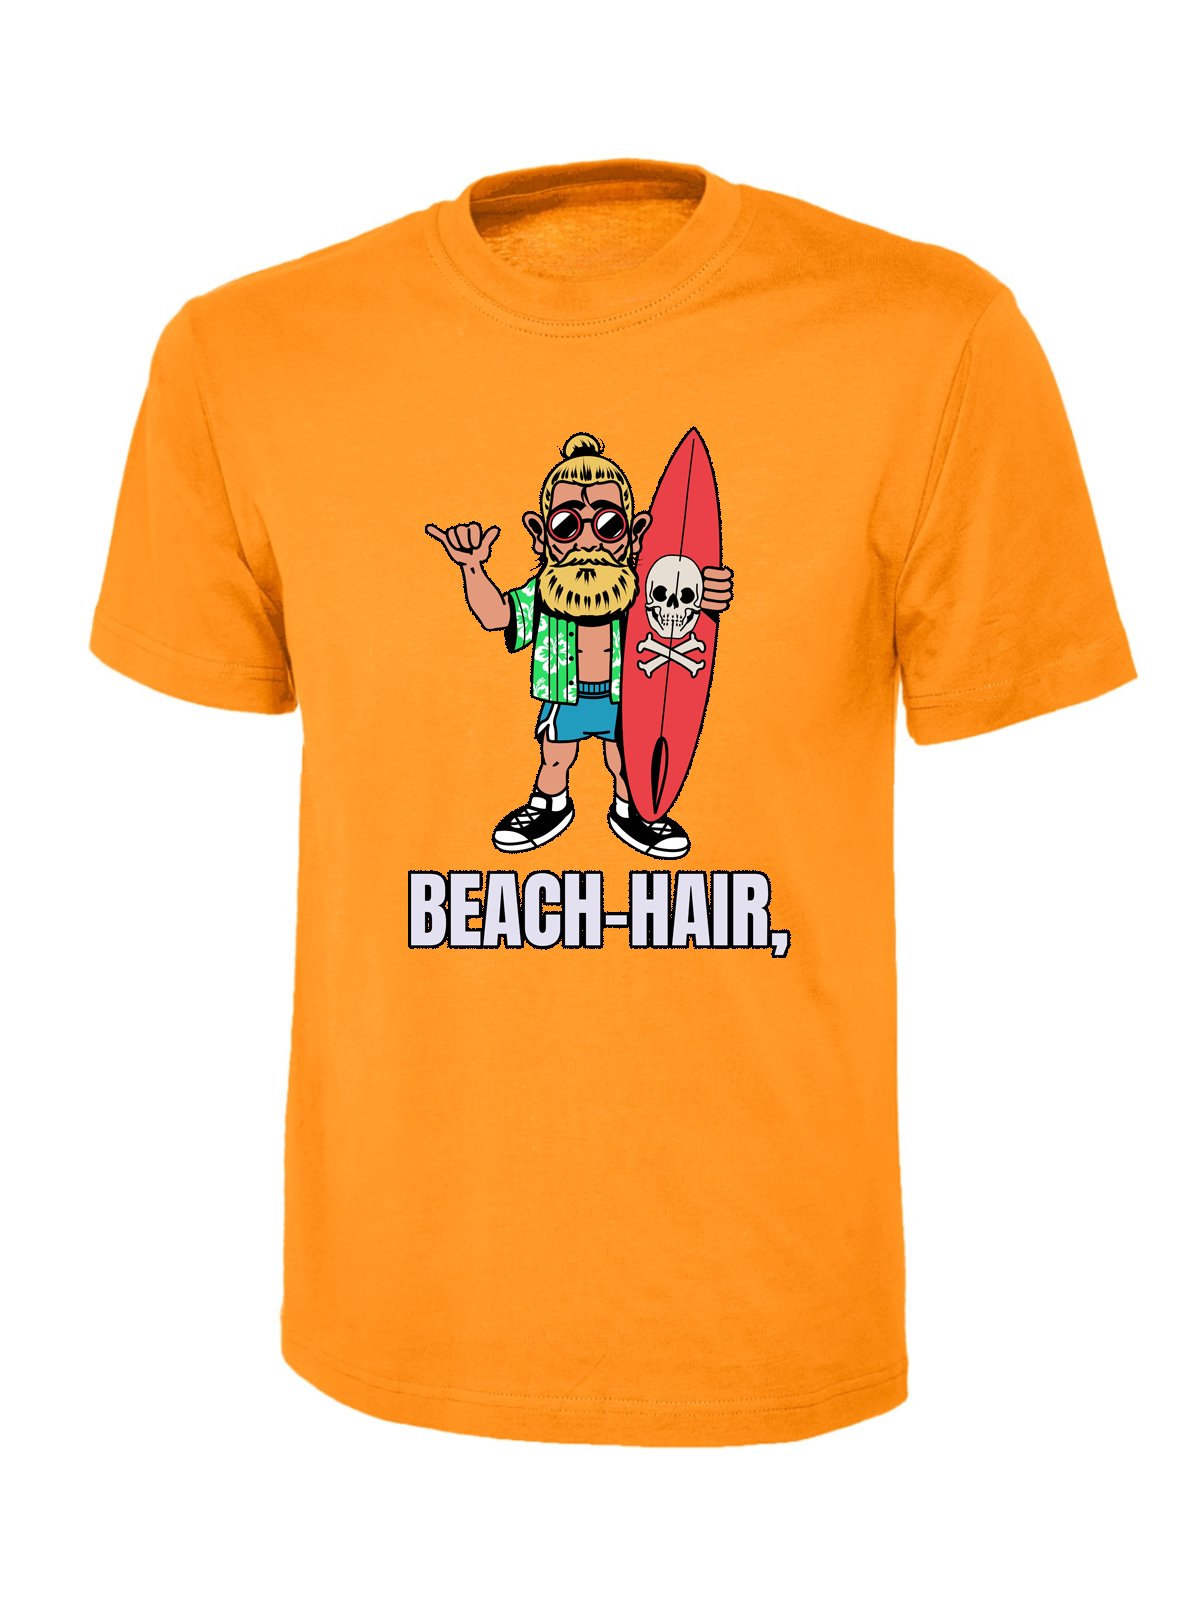 Beach Hair Tee - Wow T-Shirts